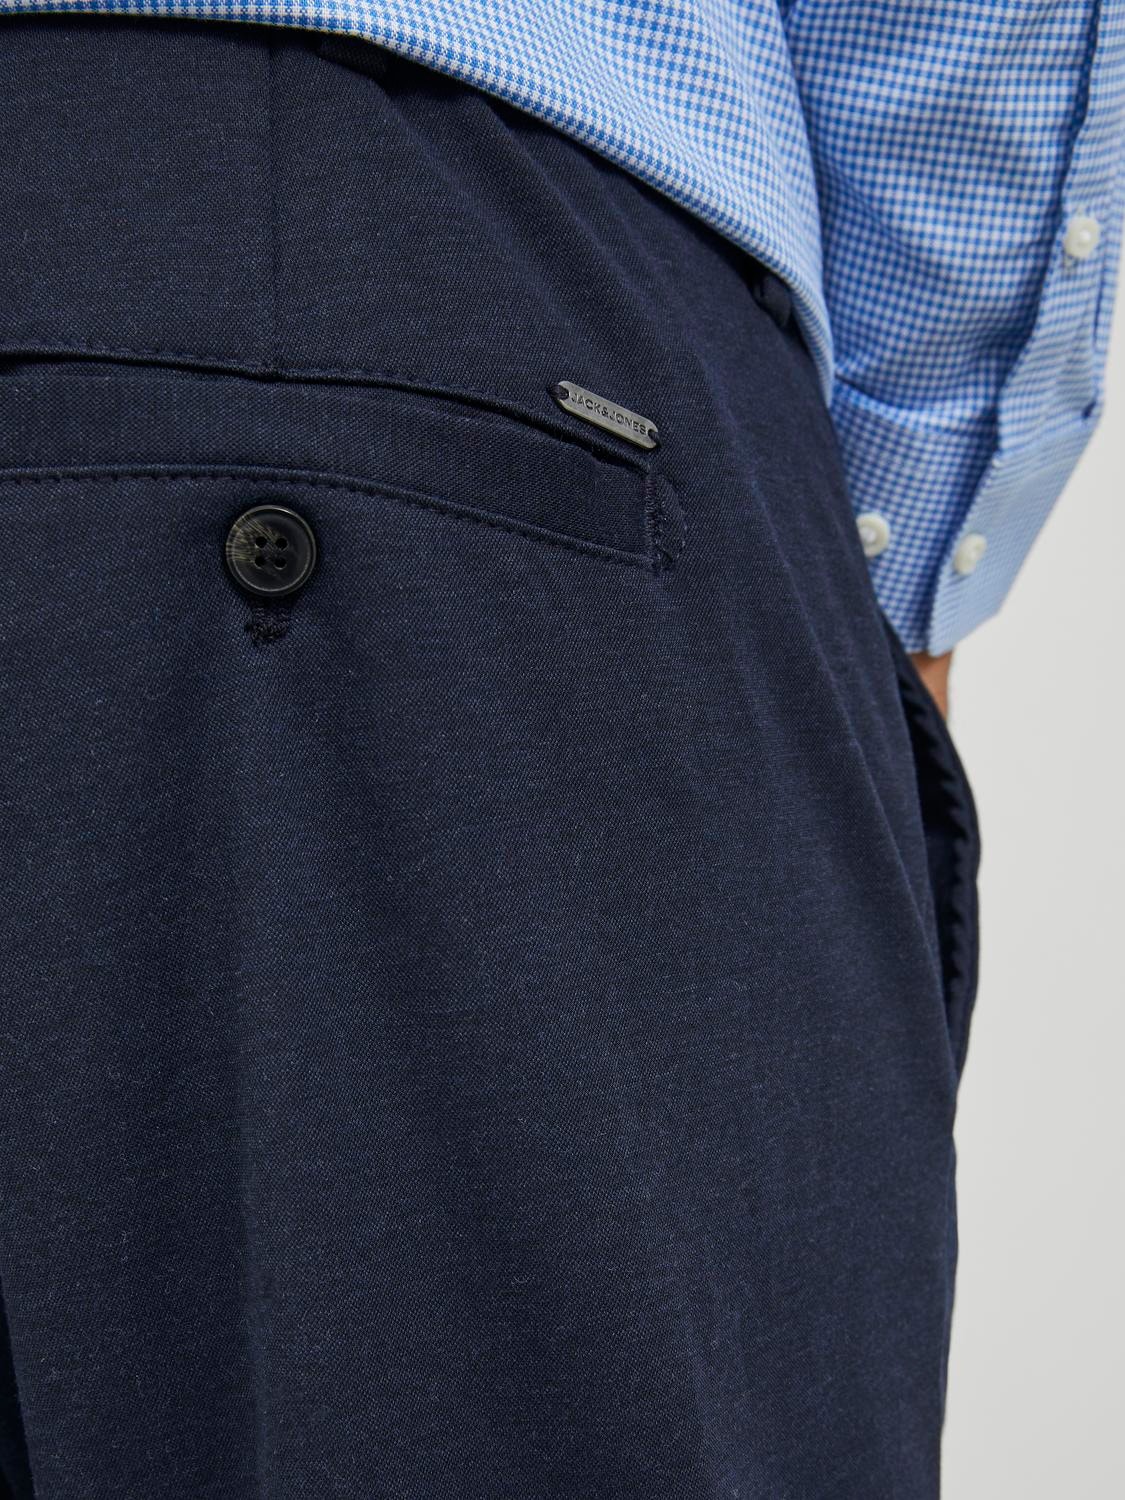 Jack & Jones Plus Size Slim Fit Chino kelnės -Navy Blazer - 12250503